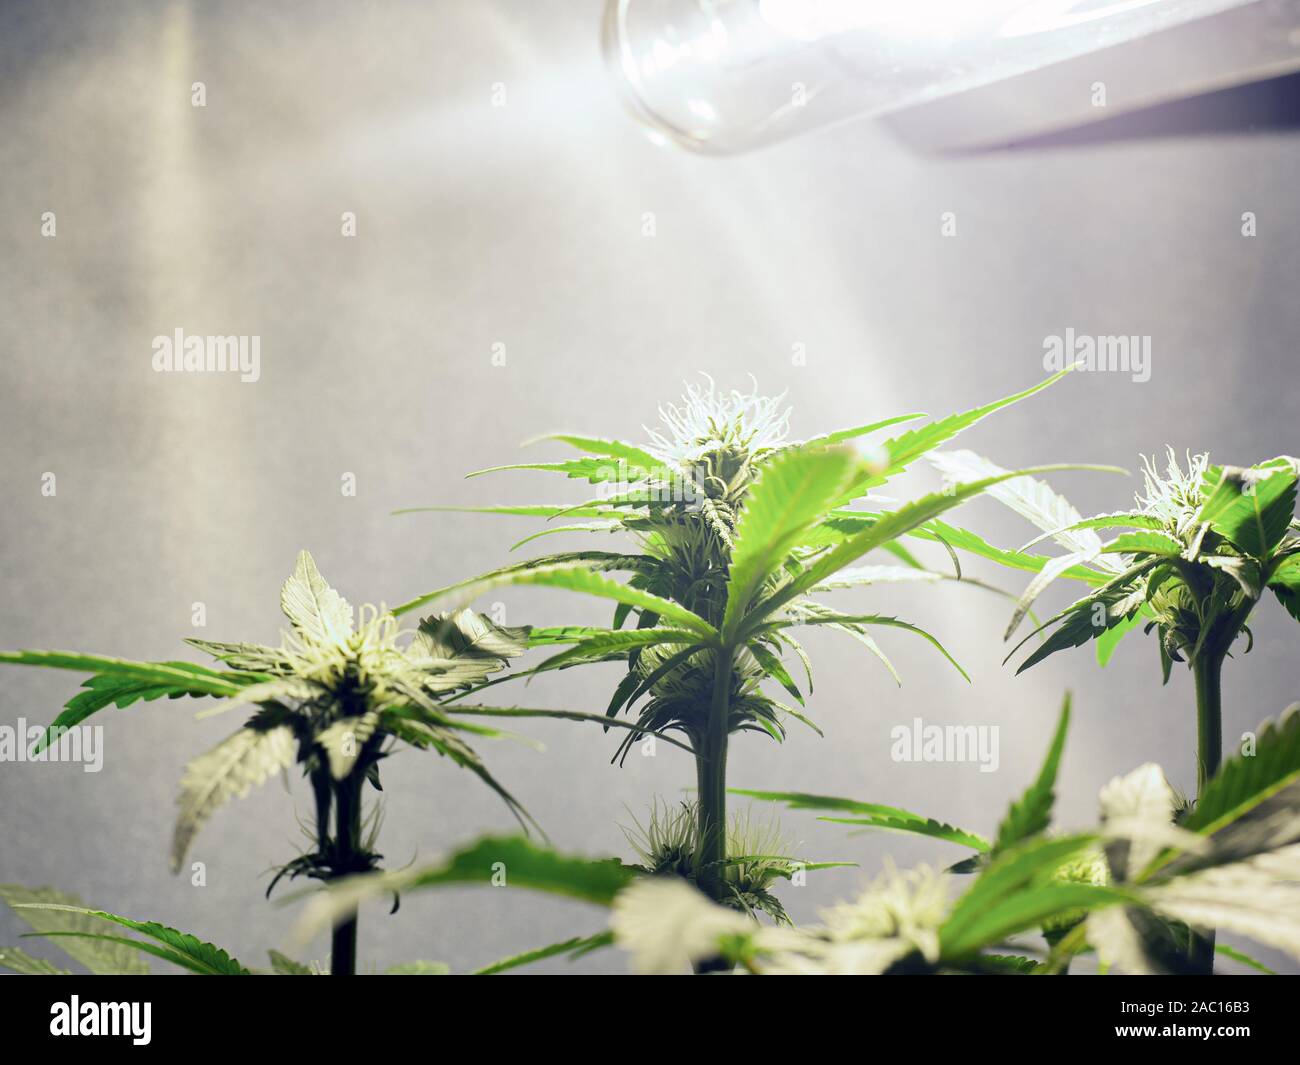 Wachsende Marihuana unter künstlichem Licht zu Hause. Blüte Marihuana unter  der Lampe Stockfotografie - Alamy